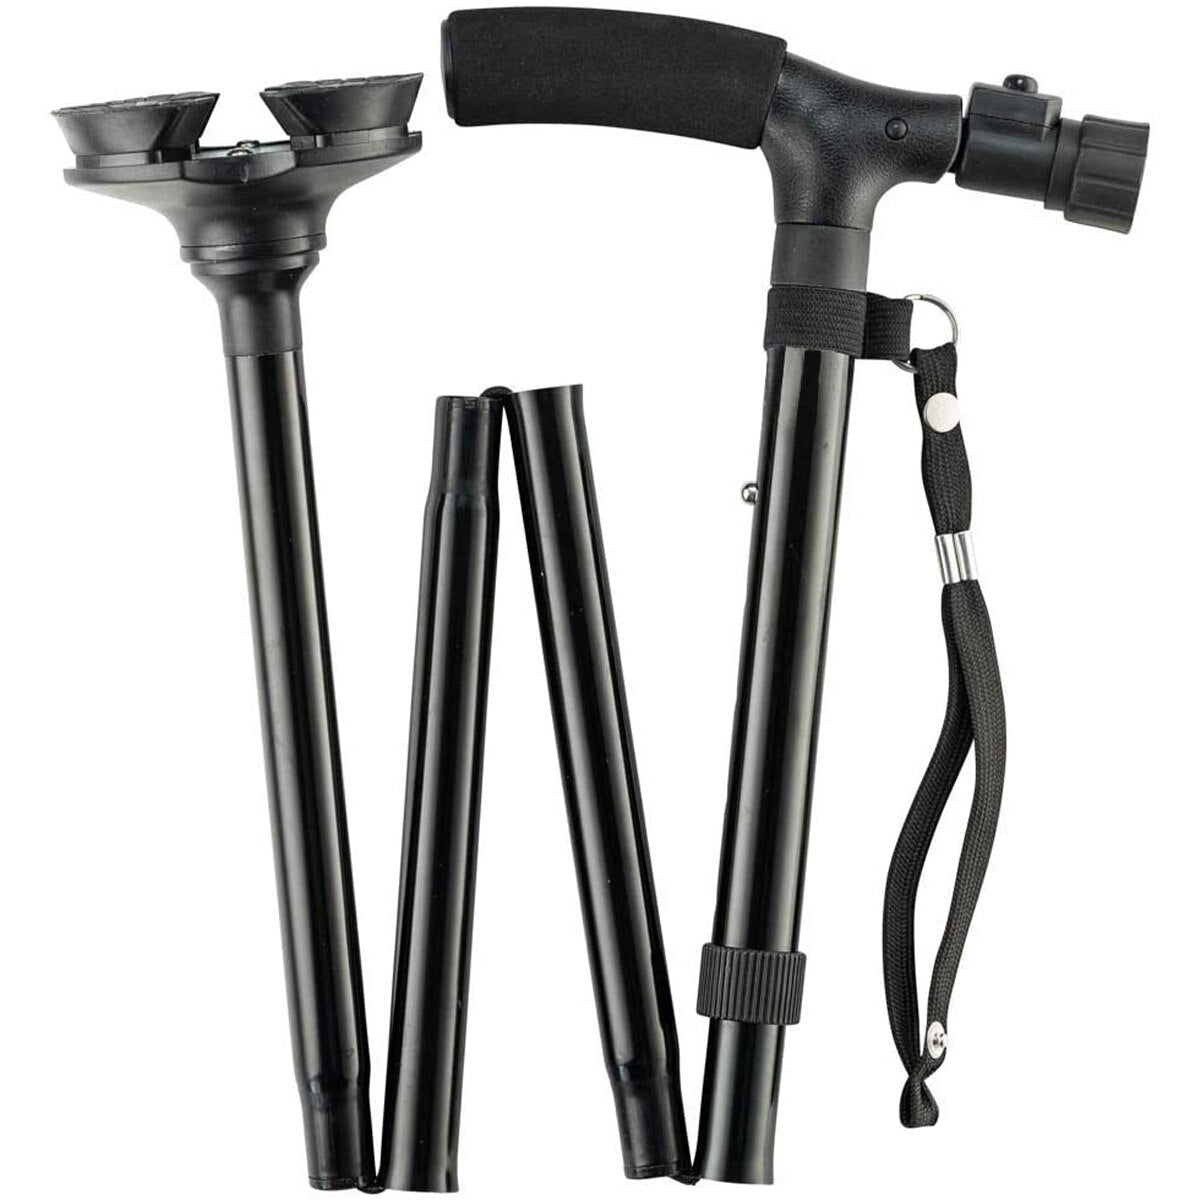 Folding Cane with LED Light Foldable Walking Stick Anti-Slip Disability Aluminium Cane Torch Adjustable Portable Emergency Lamp